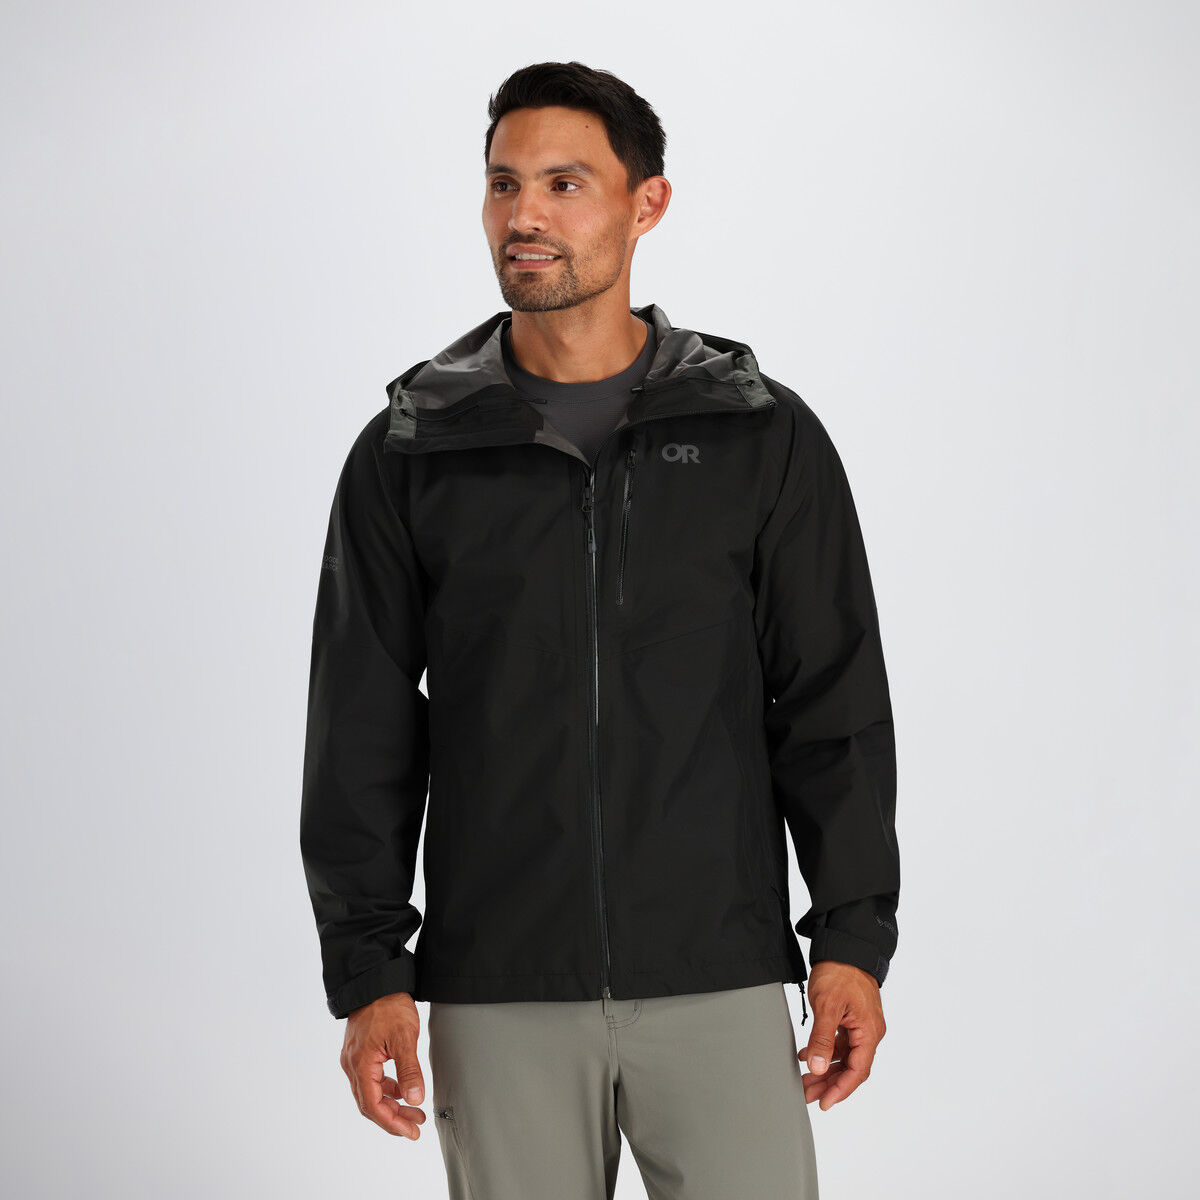 Outdoor Research Foray II Jacket - Waterproof jacket - Men's